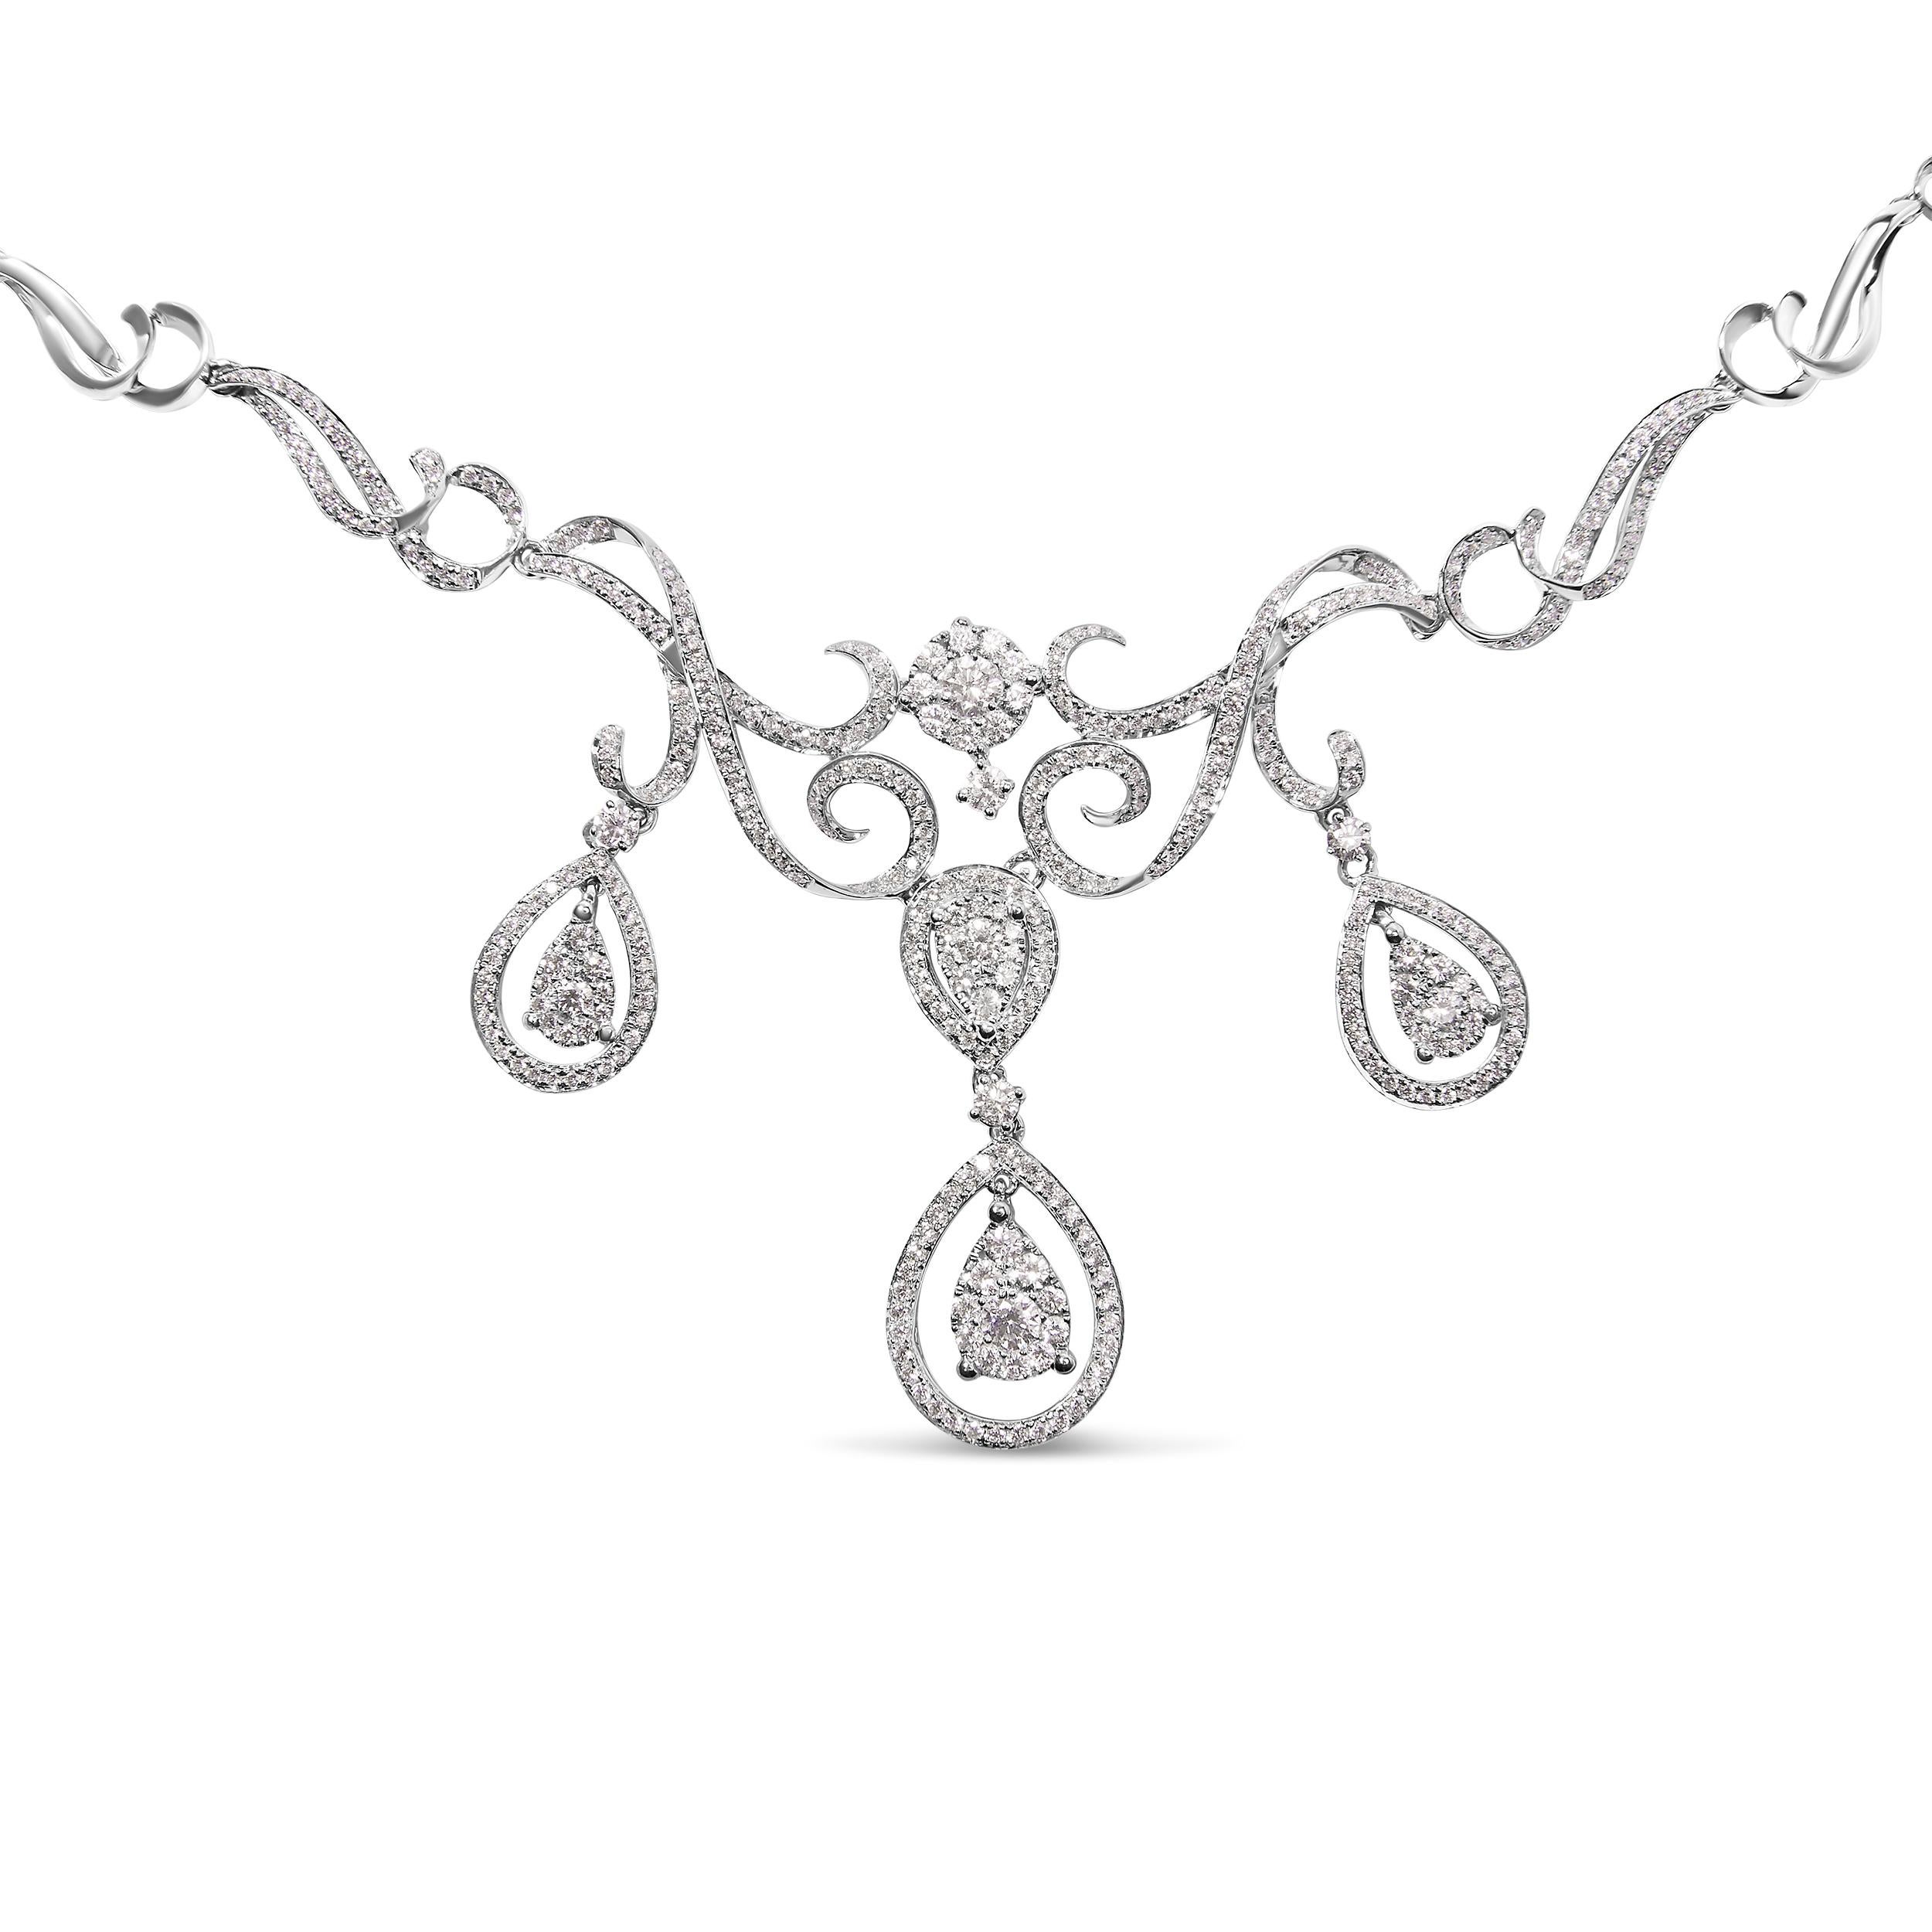 Voici une expression opulente de l'élégance et de la sophistication pour la femme moderne - un luxueux collier de diamants de couleur G-H et de pureté SI1-SI2, qui constitue le complément idéal de toute collection de beaux bijoux. Conçu pour